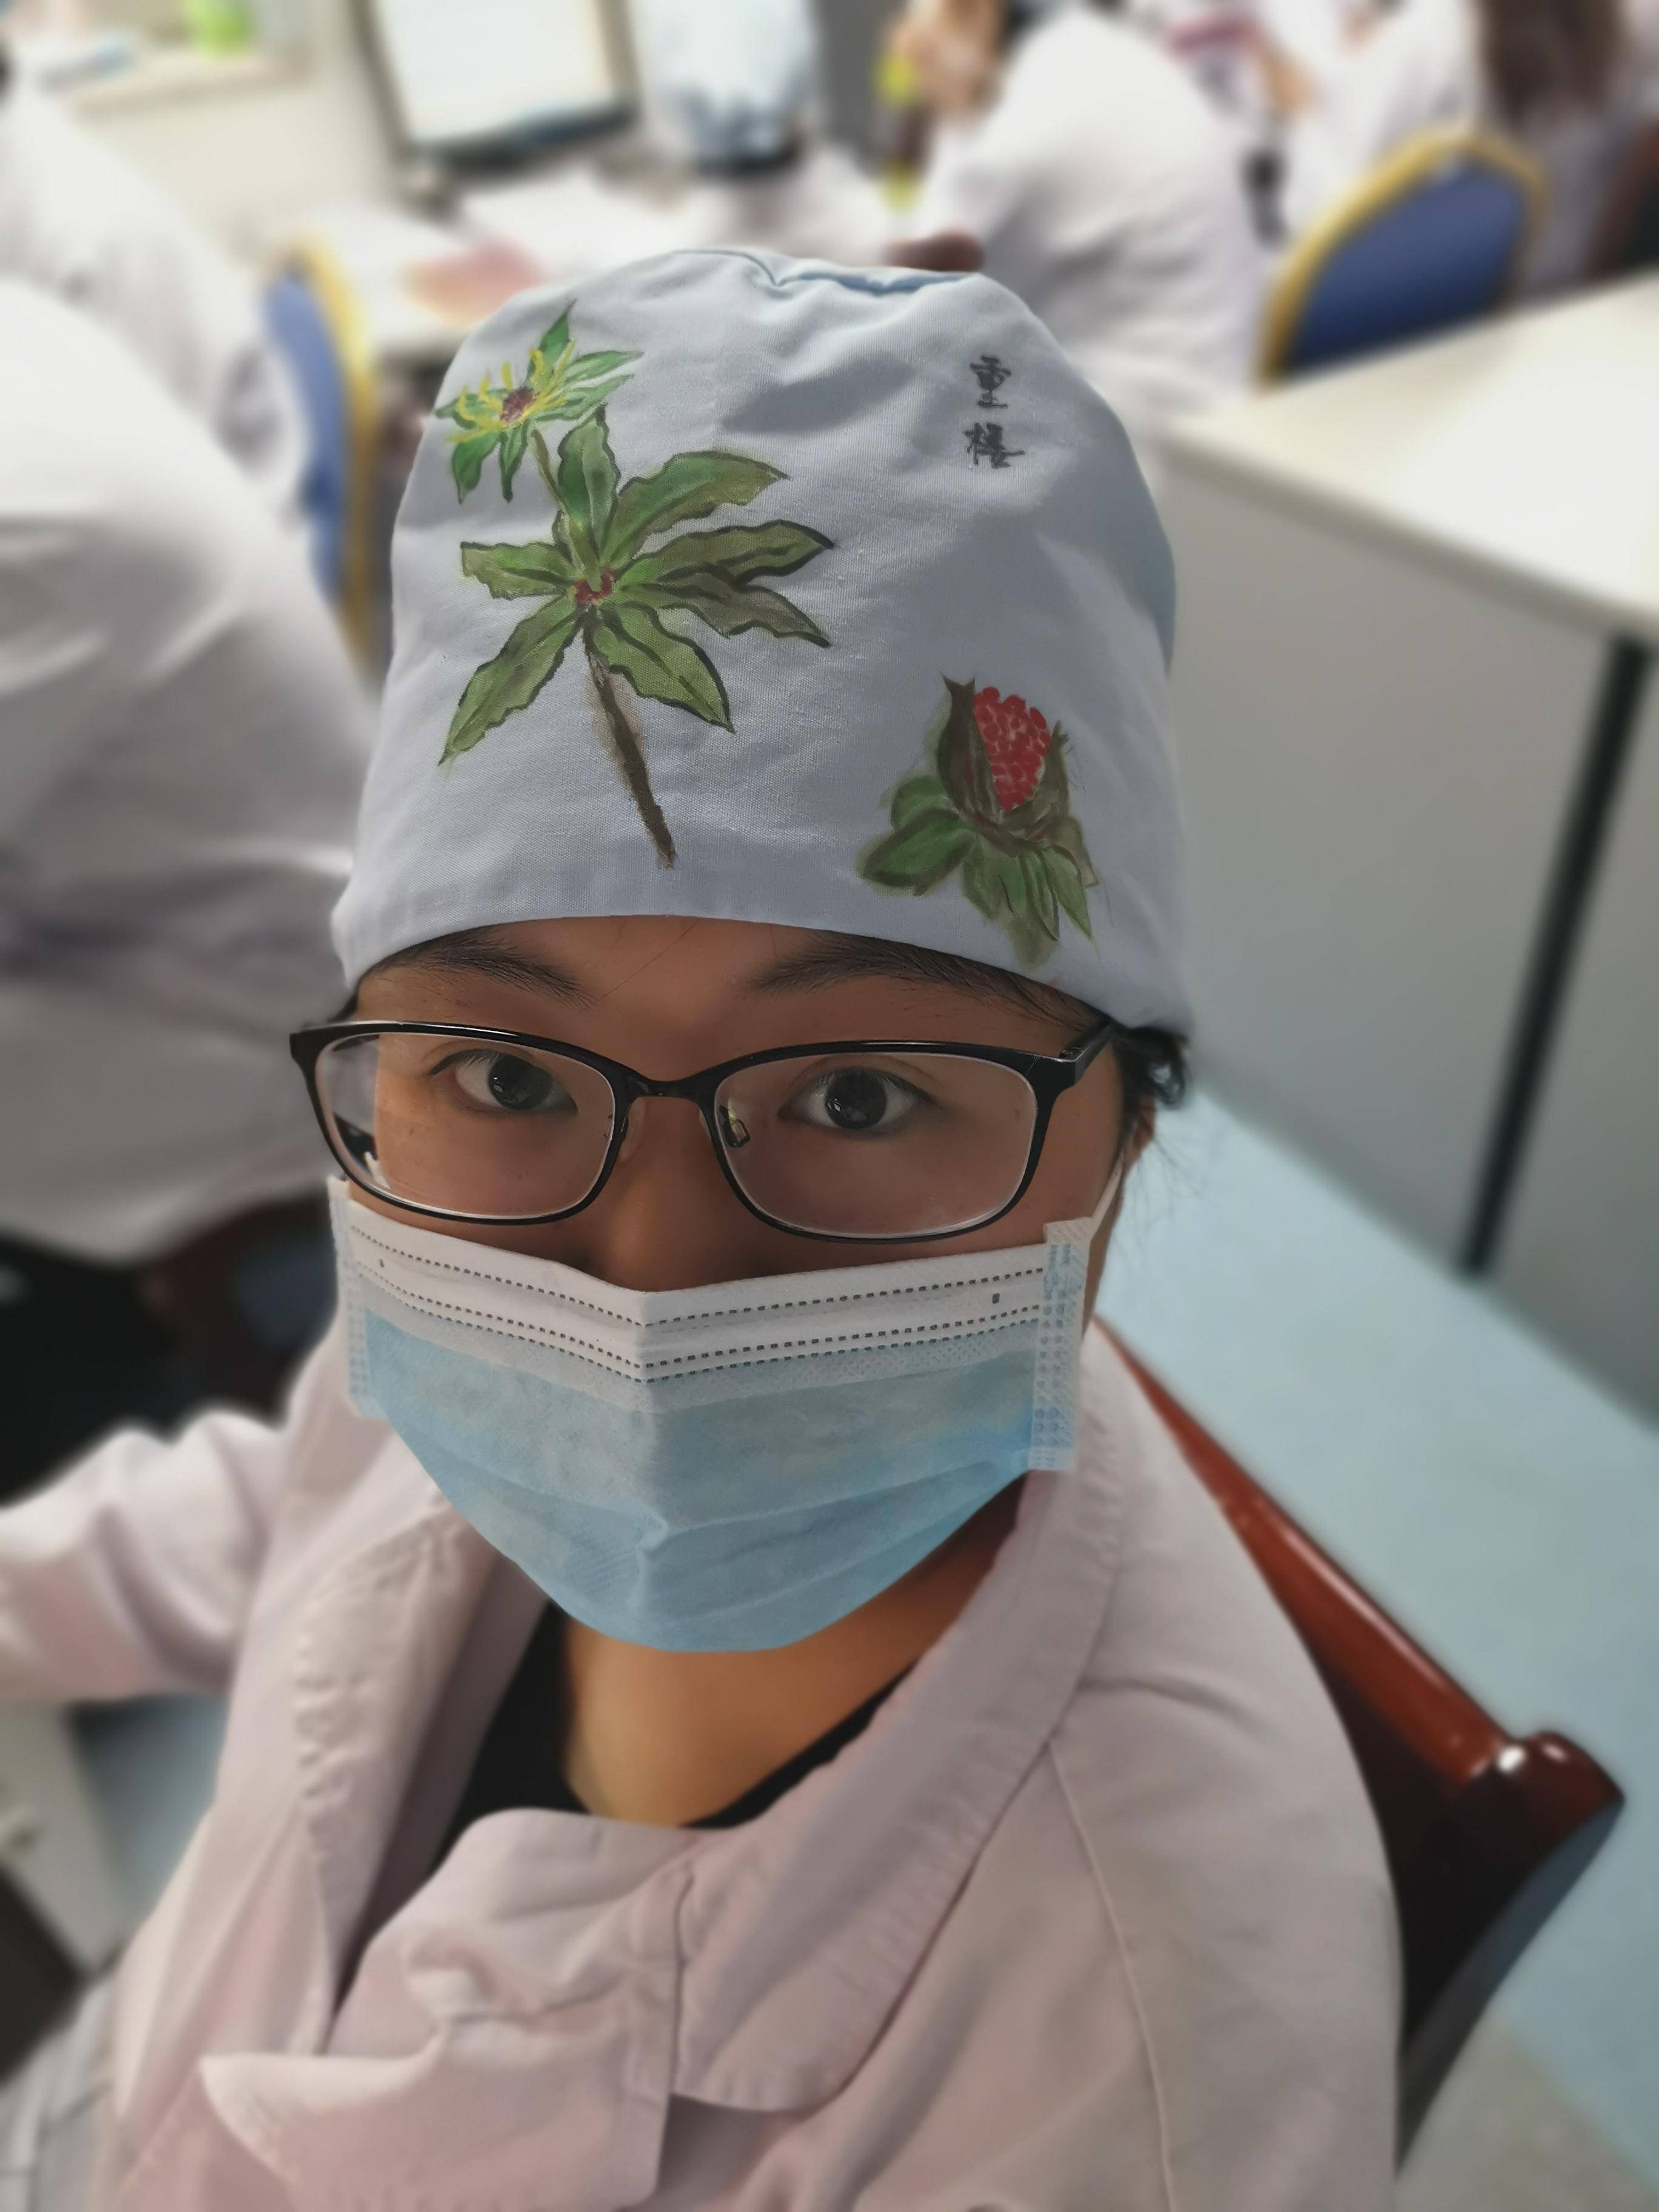 很别致的”草帽“。图片由江苏省肿瘤医院提供。